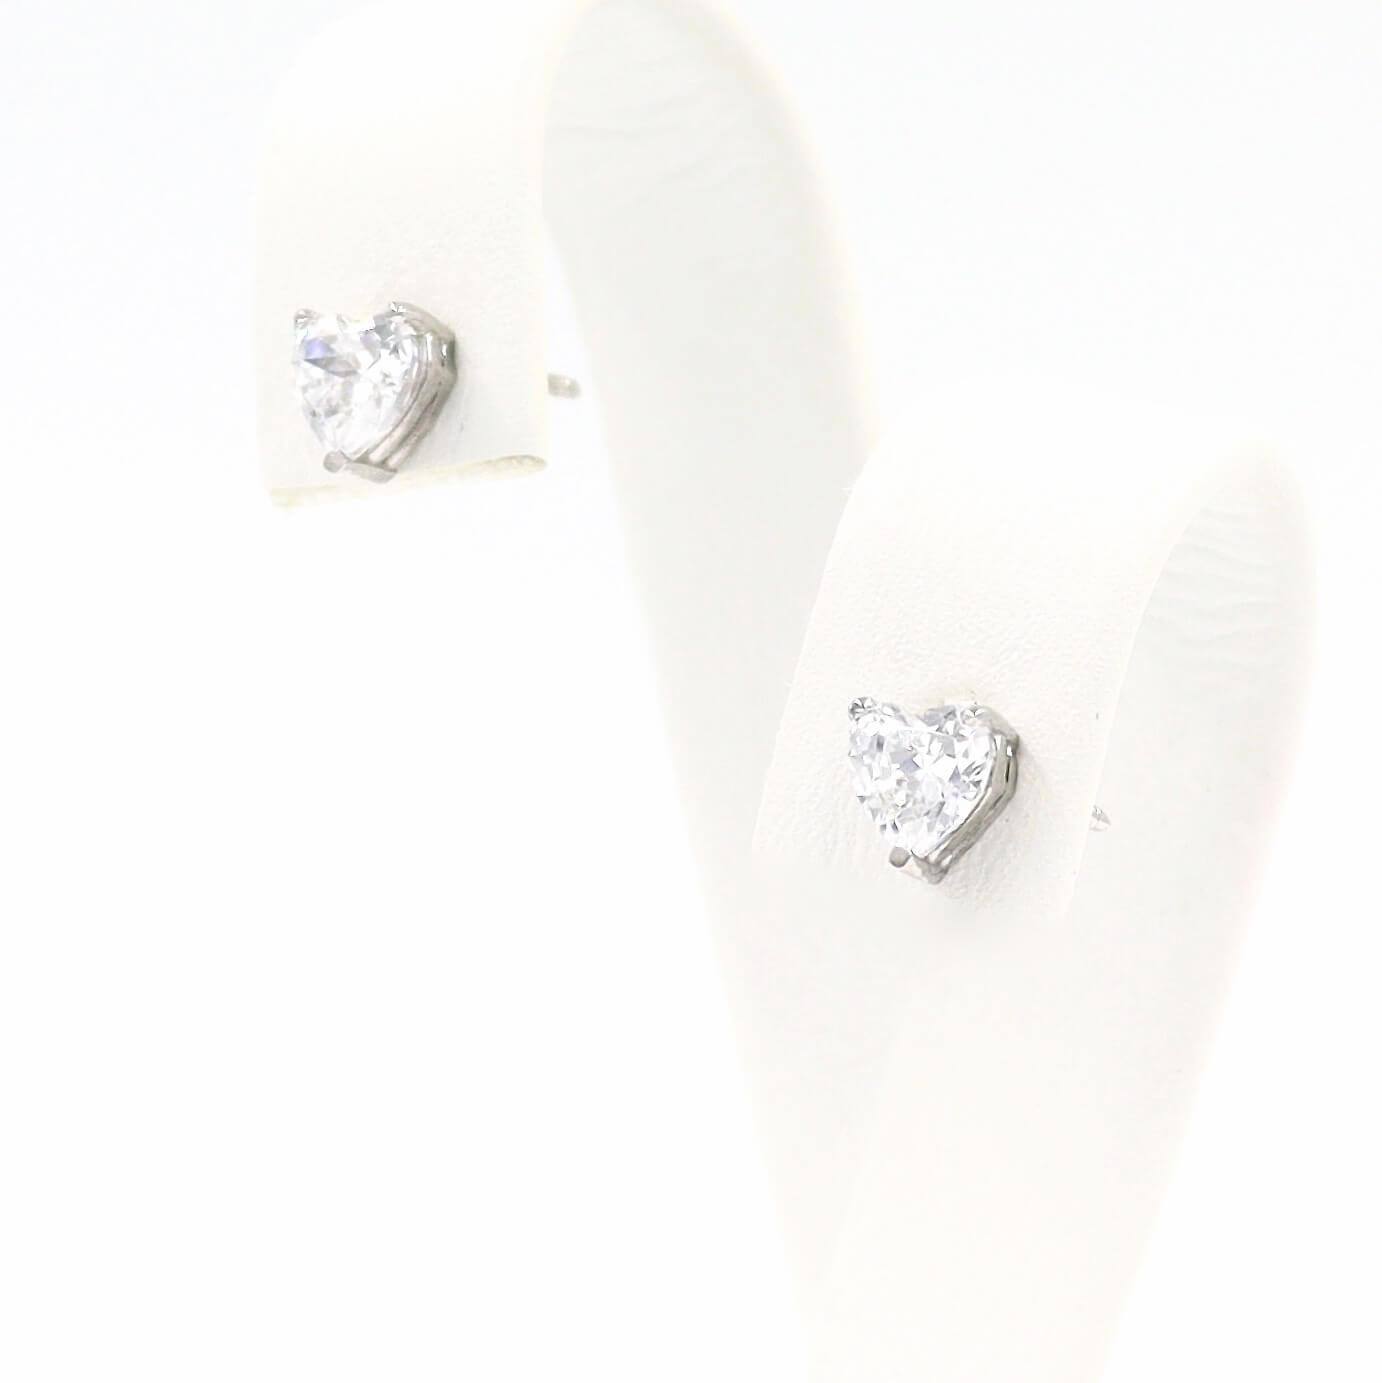 Λευκόχρυσο σετ γάμου με λευκές πέτρες σε σχήμα καρδιάς